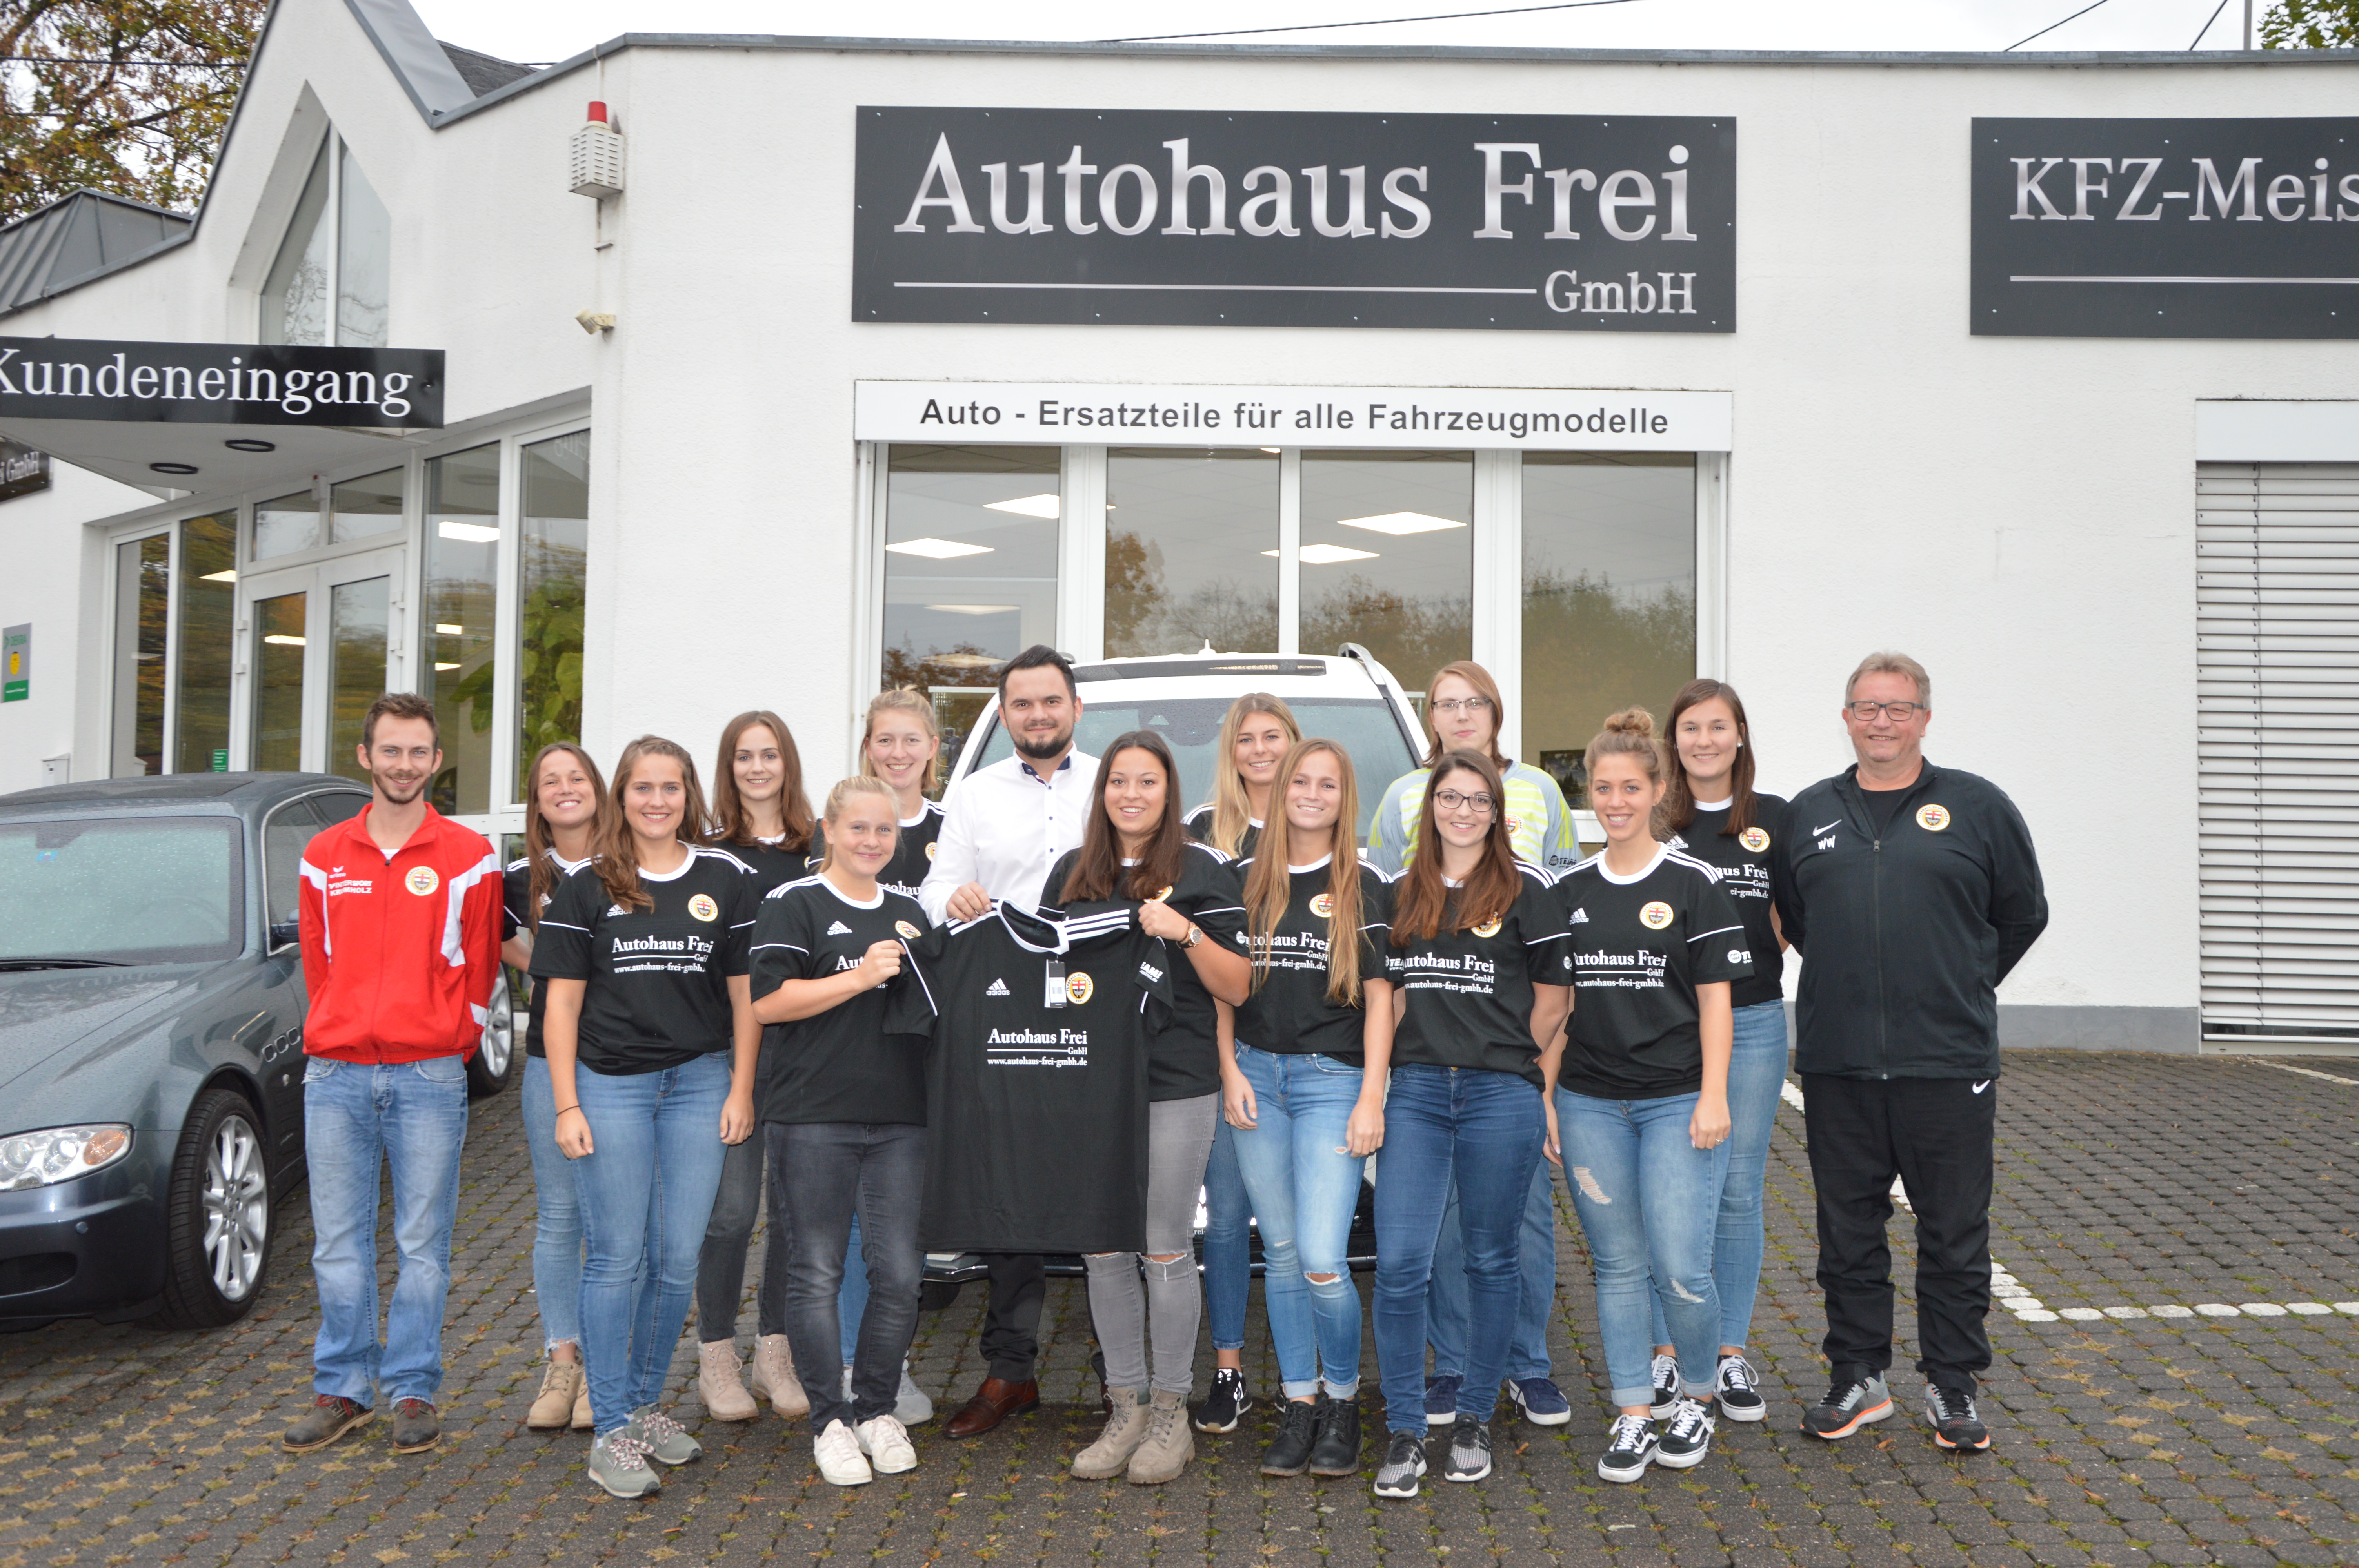 Bendorfer Autohaus unterstützt Frauenteam